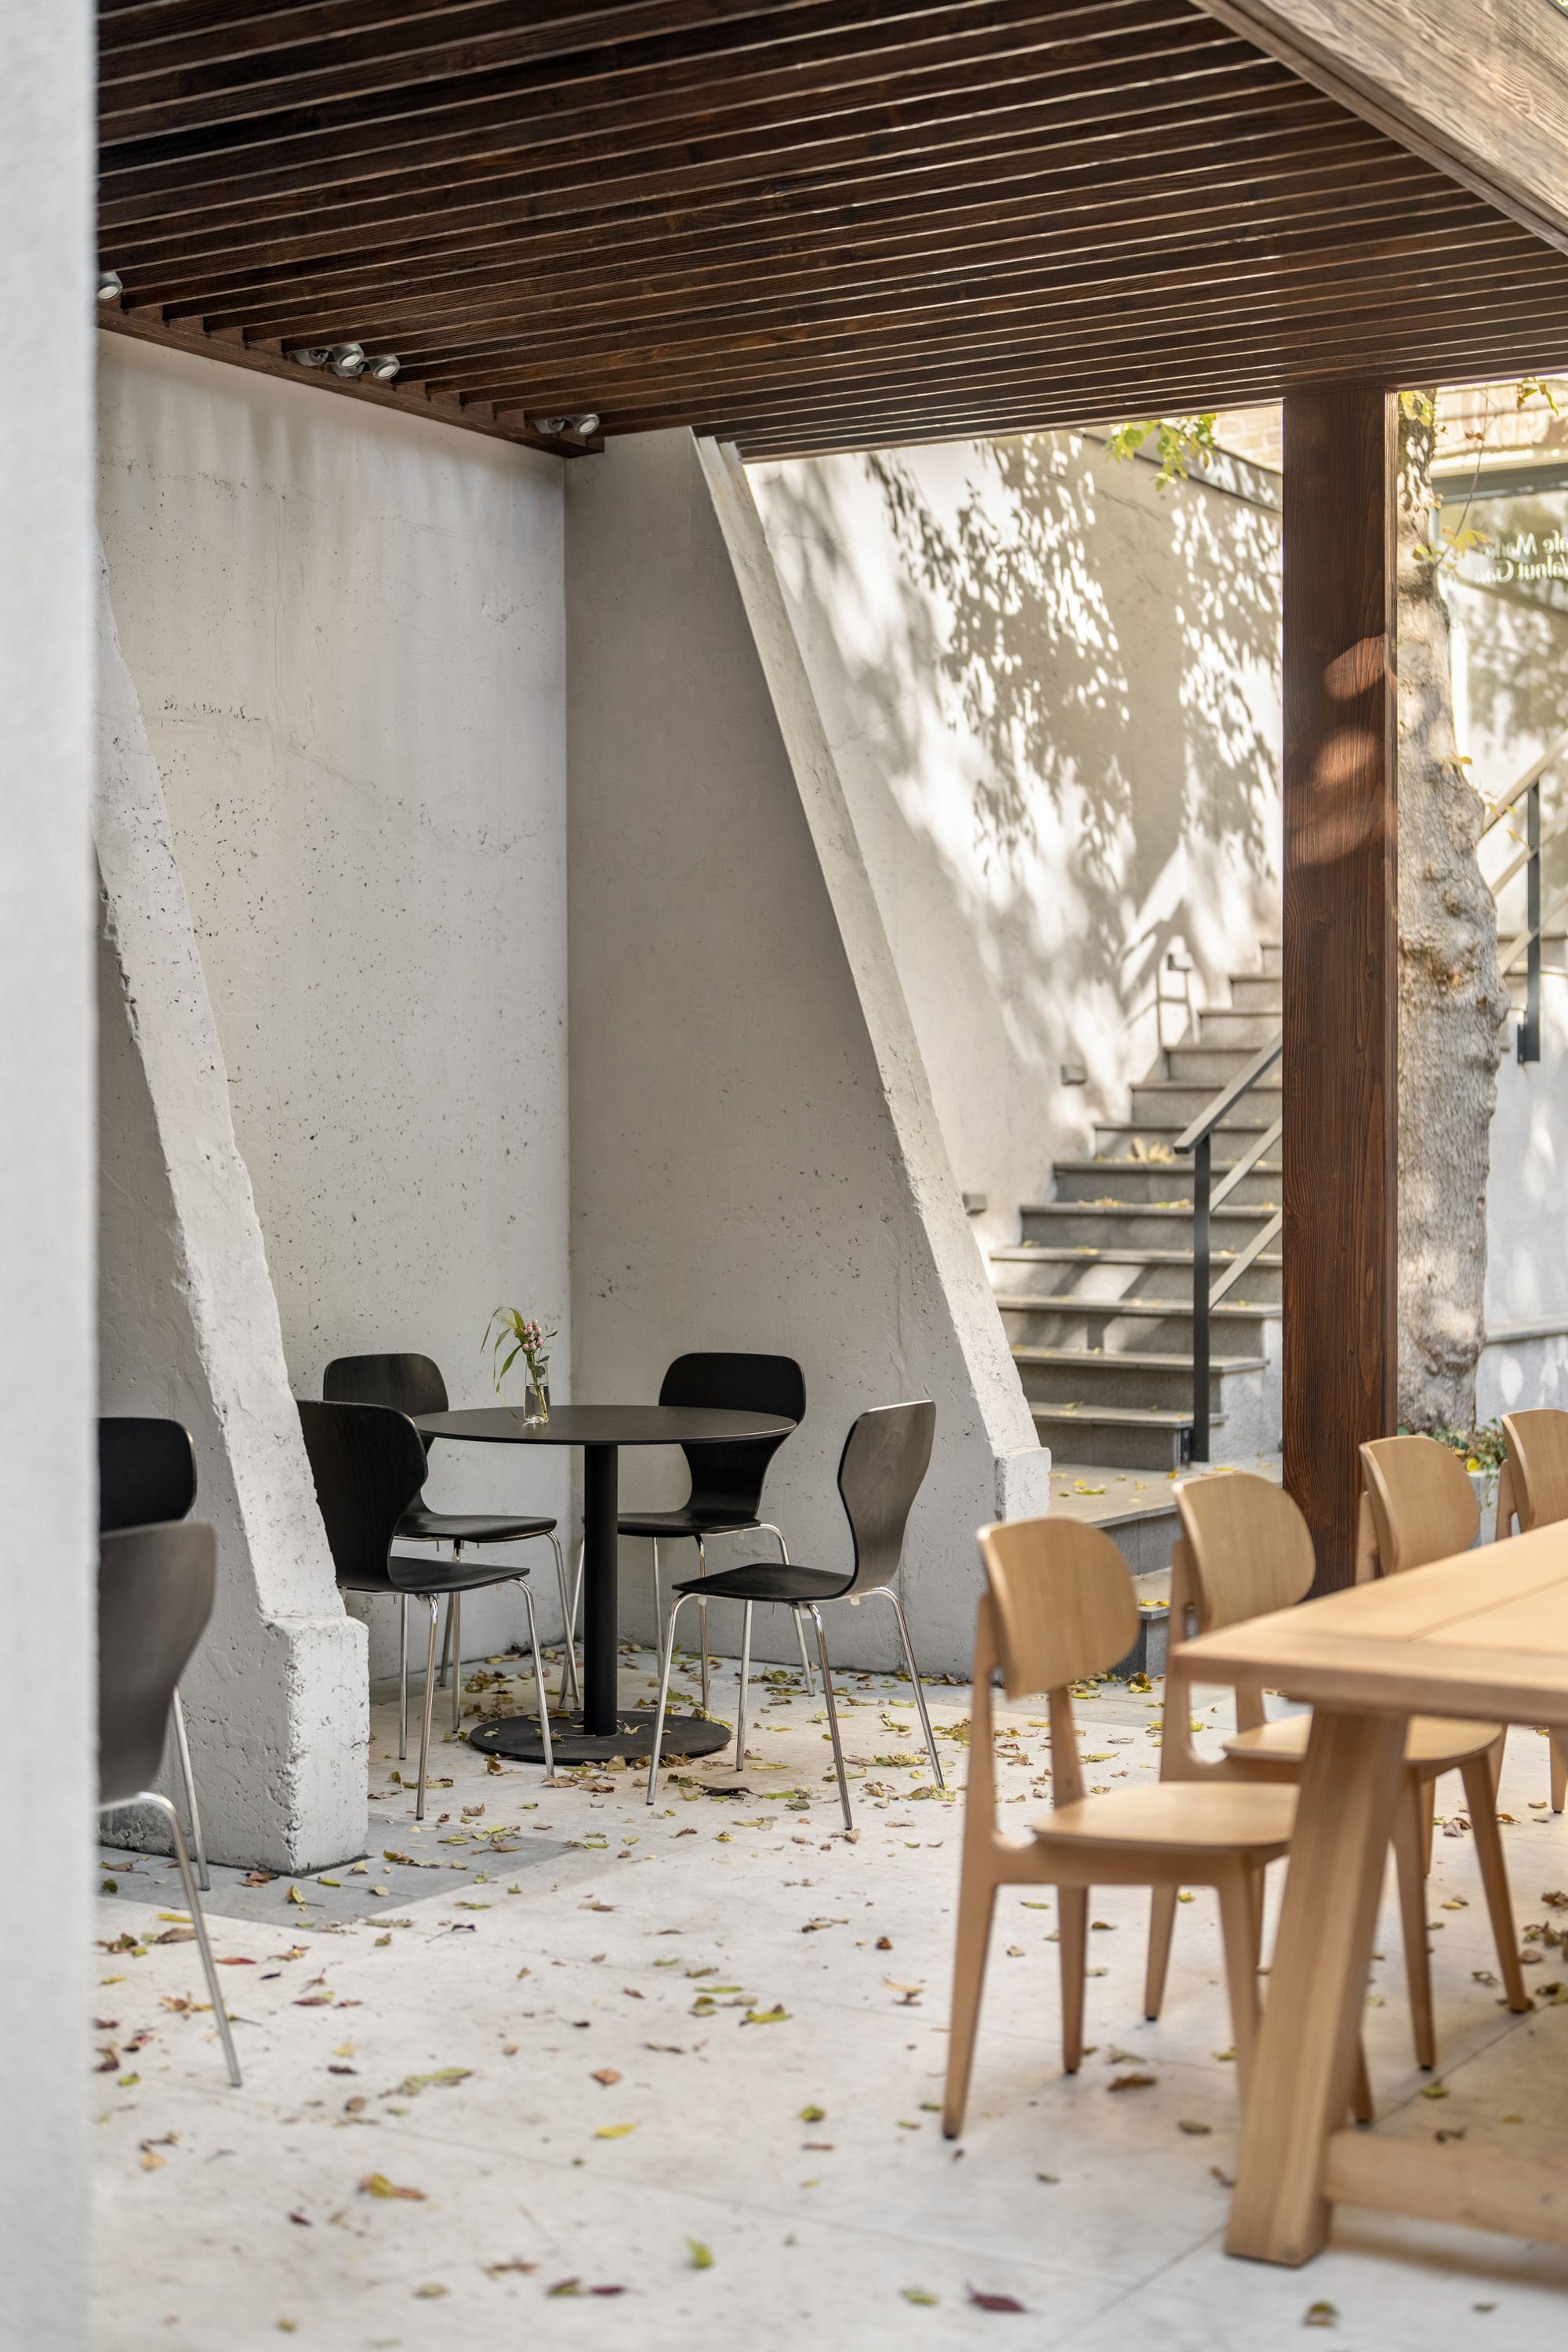 图片[7]|索菲亚酒店|ART-Arrakis | 建筑室内设计的创新与灵感